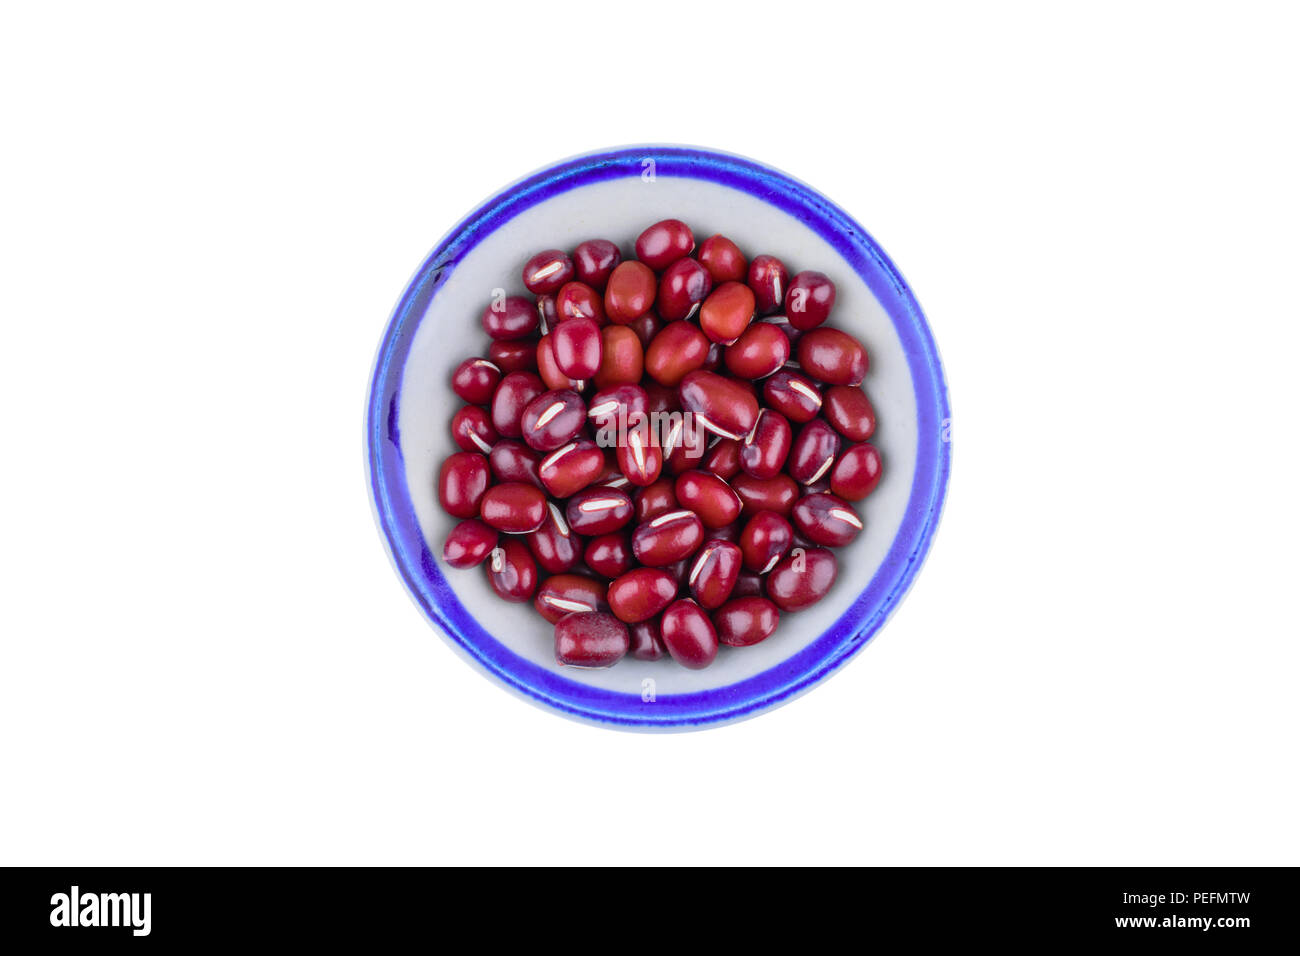 Les haricots rouges dans un bol isolé sur fond blanc avec chemin de coupure de l'alimentation et la nutrition saine.concept. Banque D'Images